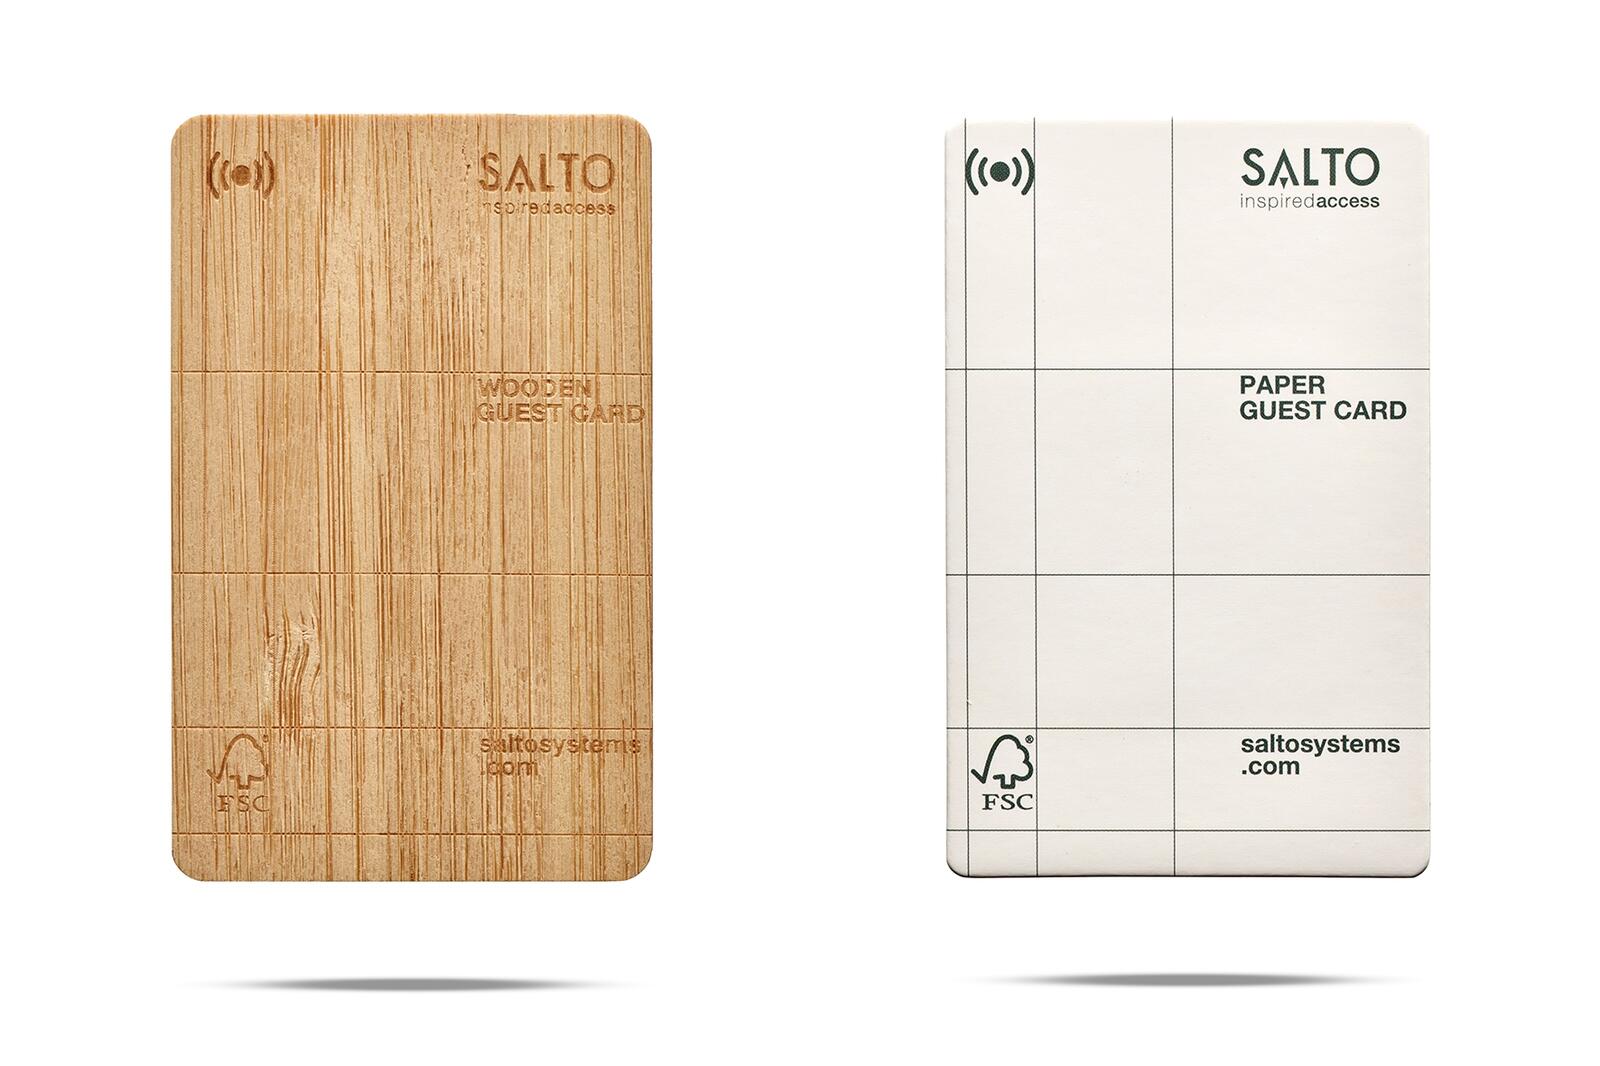 Die aus Holzzellfasern hergestellten, natürlich strukturierten Papierkarten von Salto sind leicht und dennoch sehr haltbar. Sie sind eine umweltfreundliche Alternative zu Plastikkarten im Hotel- und Gastgewerbe.